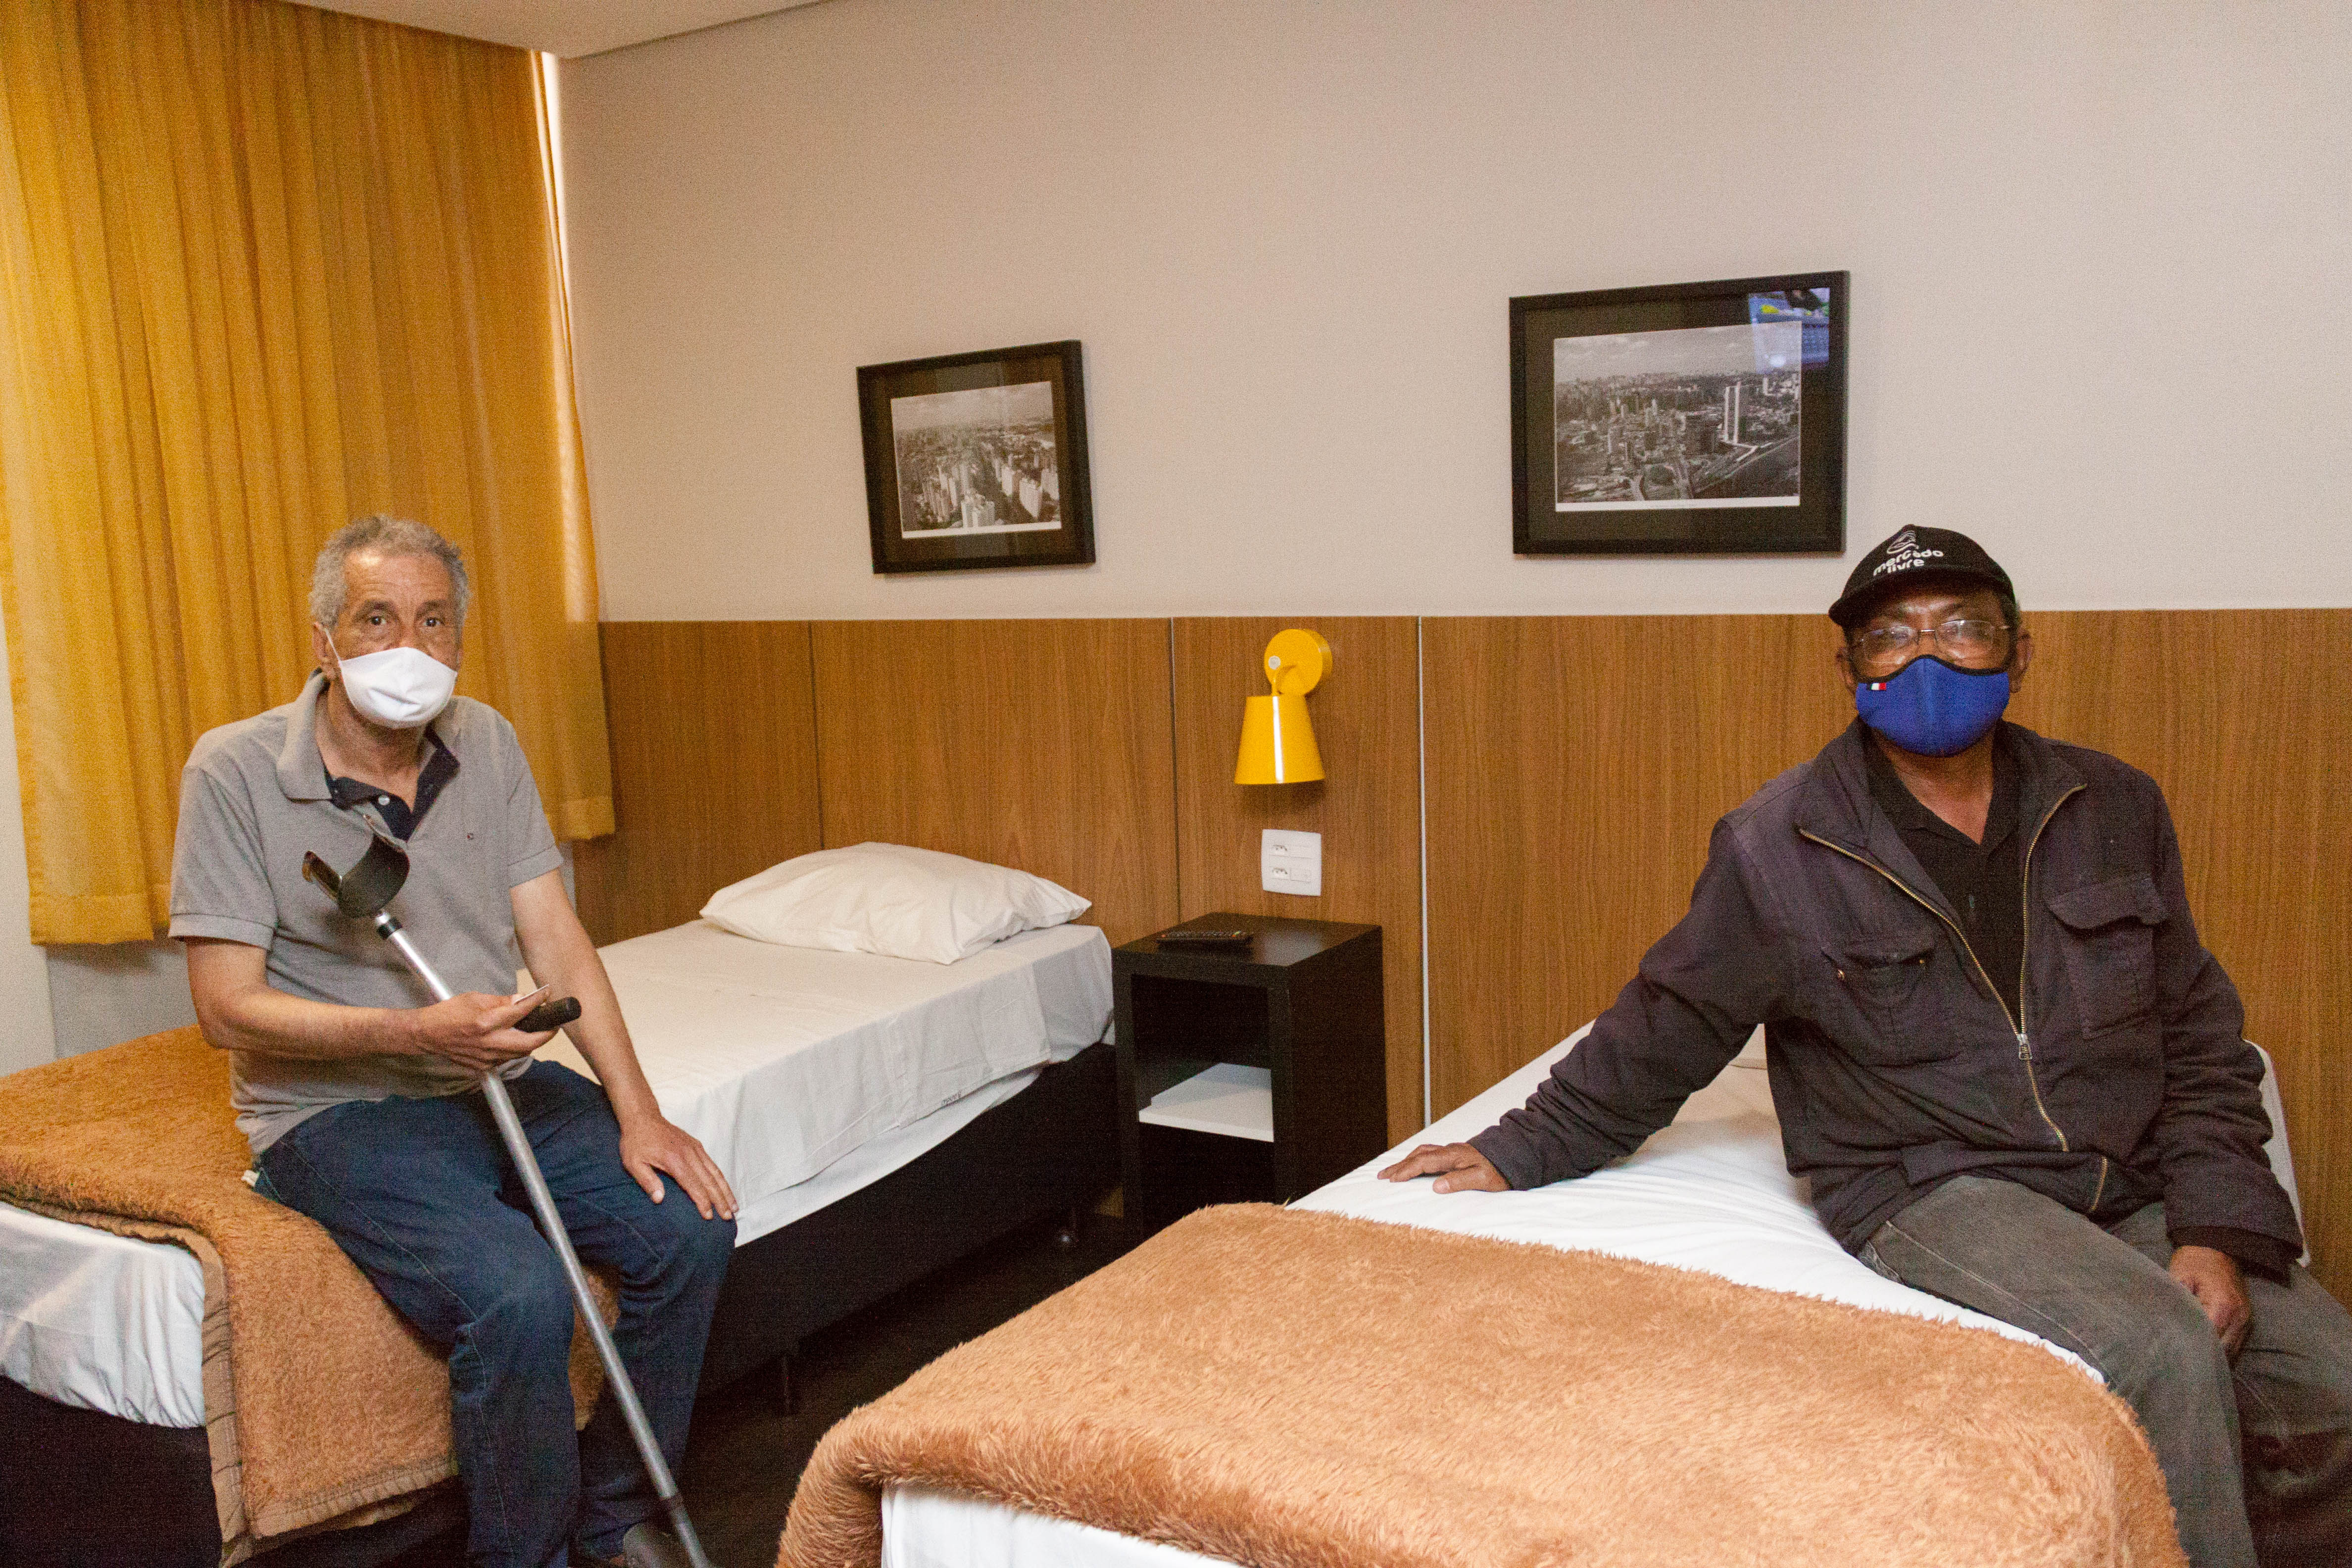 Dois idosos posam para foto. Estão sentados em camas dento do quarto de hotel, que é decorado com quadros da cidade de São Paulo e cores neutras como bege e branco. Ambos usam máscara de proteção.